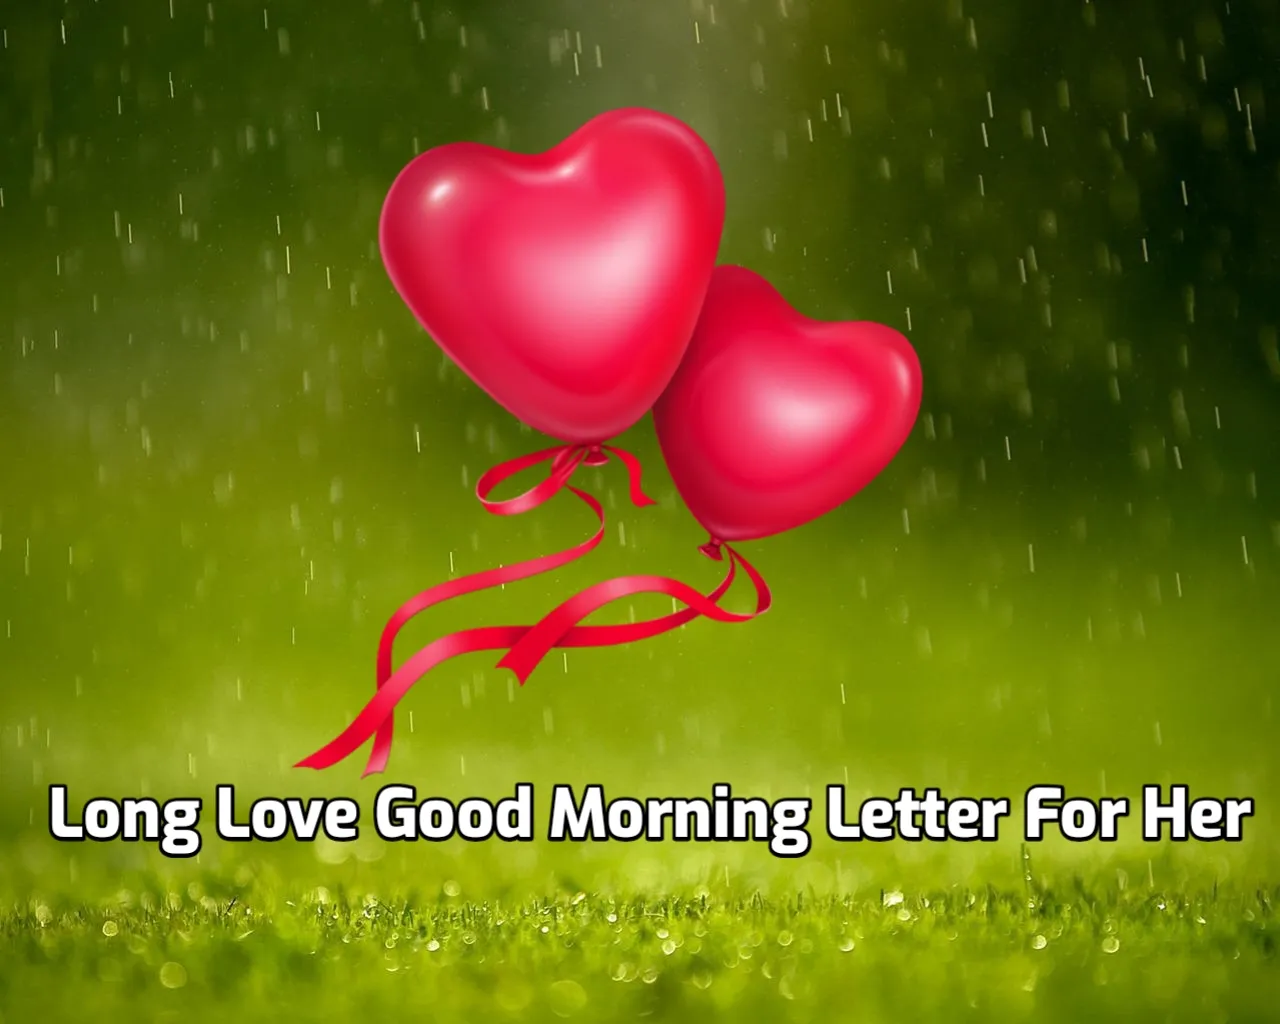 Long Love Good Morning Letter For Her